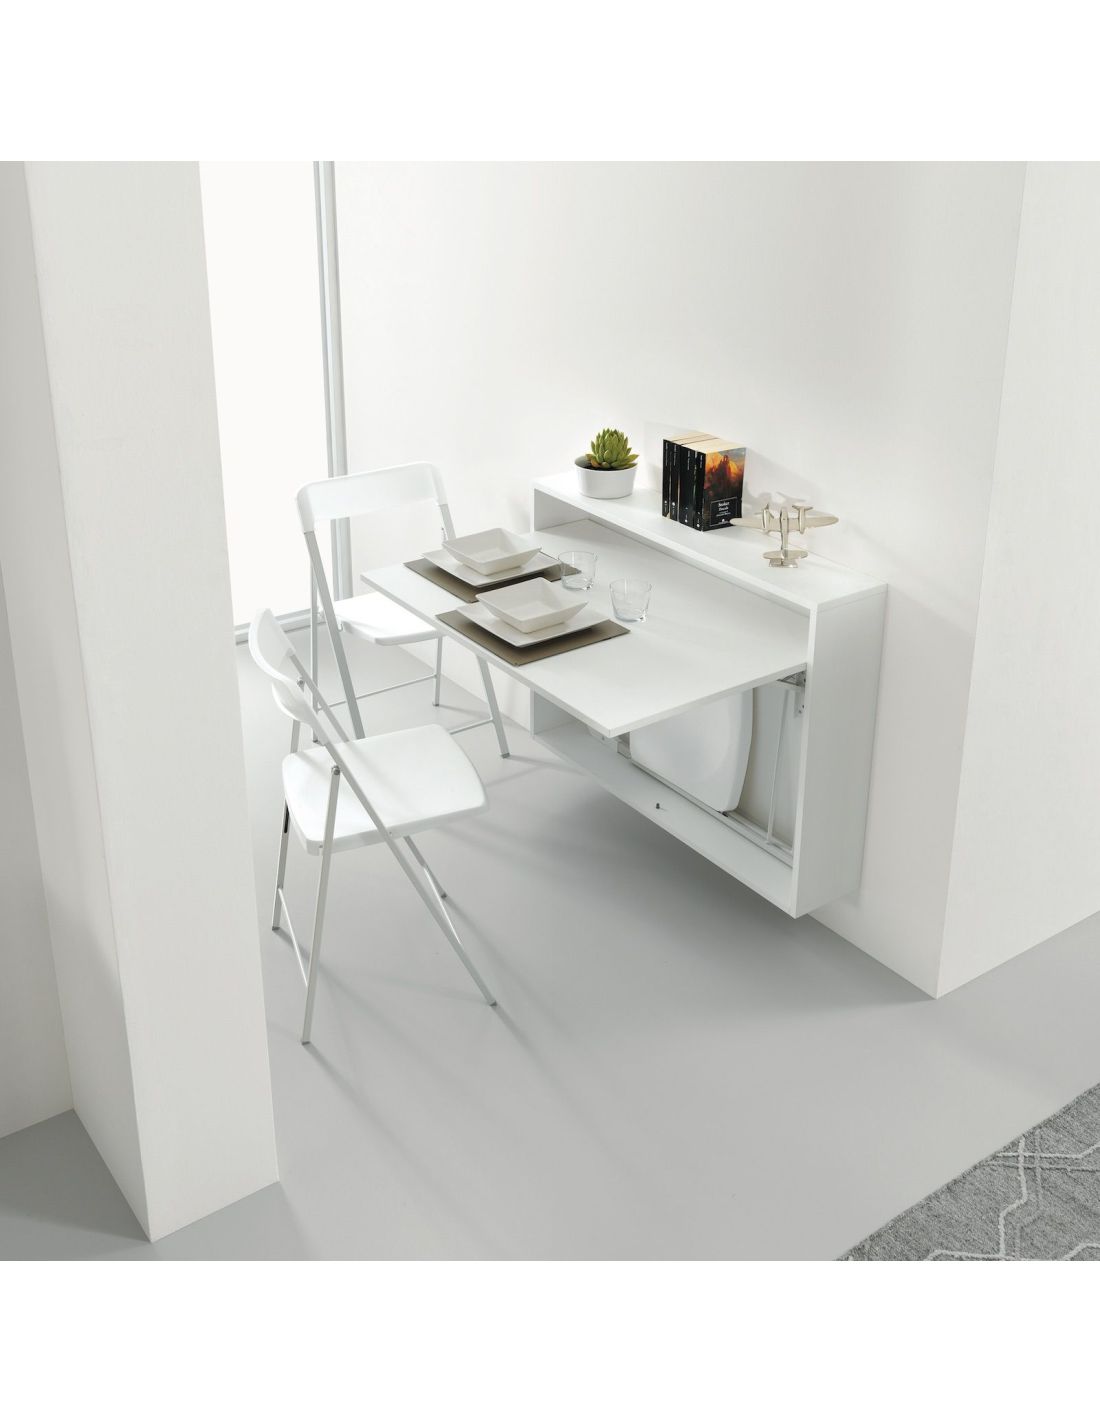 Mobili con tavolo a scomparsa: ecco le soluzioni di Ikea